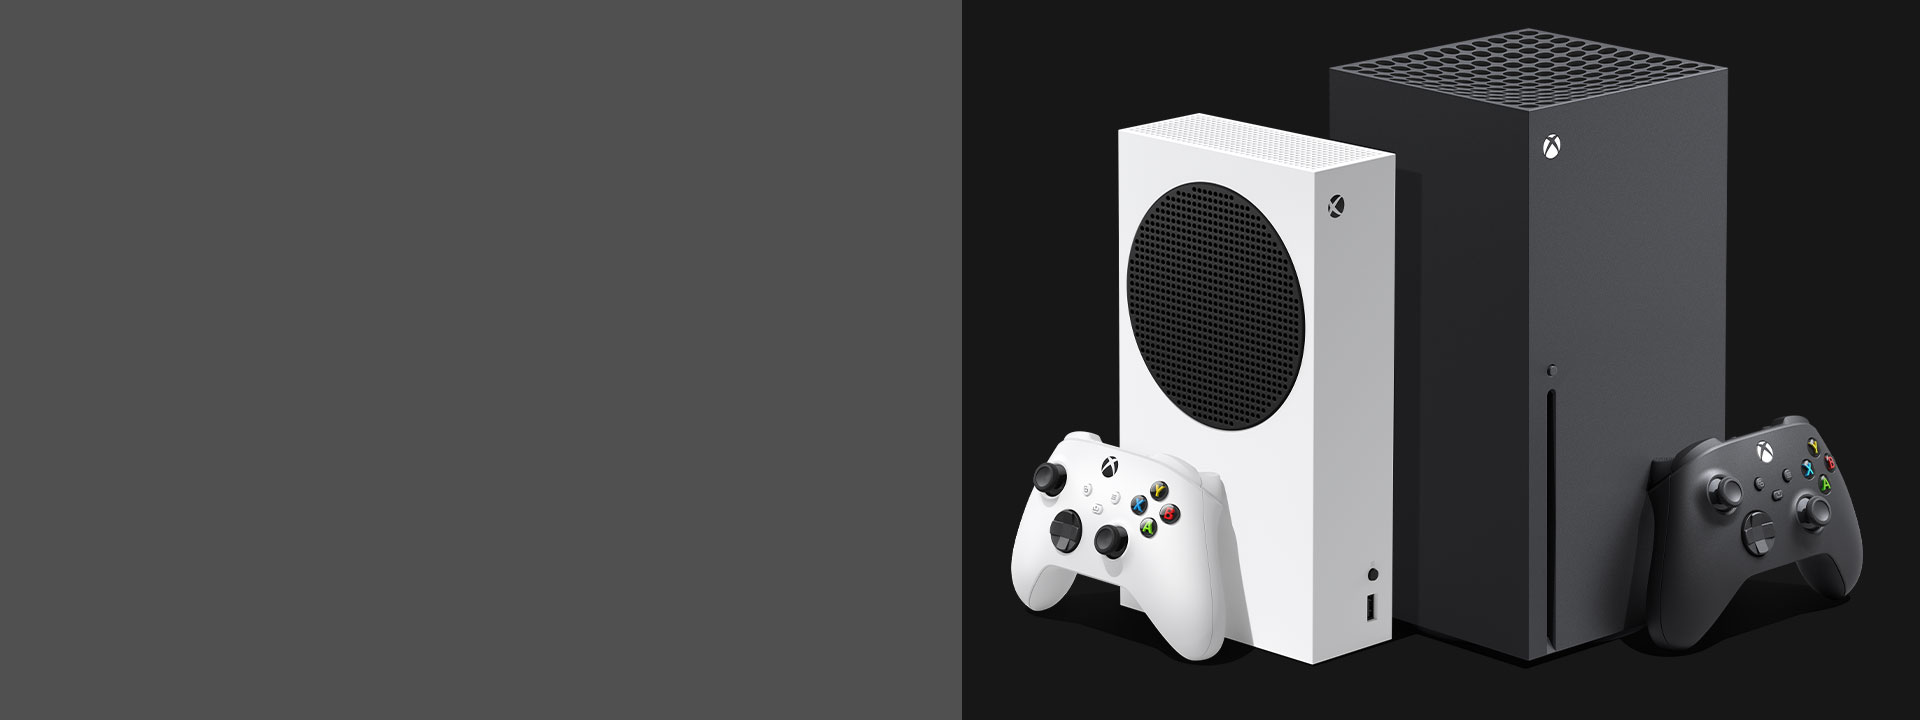 Des consoles Xbox Series X et Xbox Series S côte à côte.